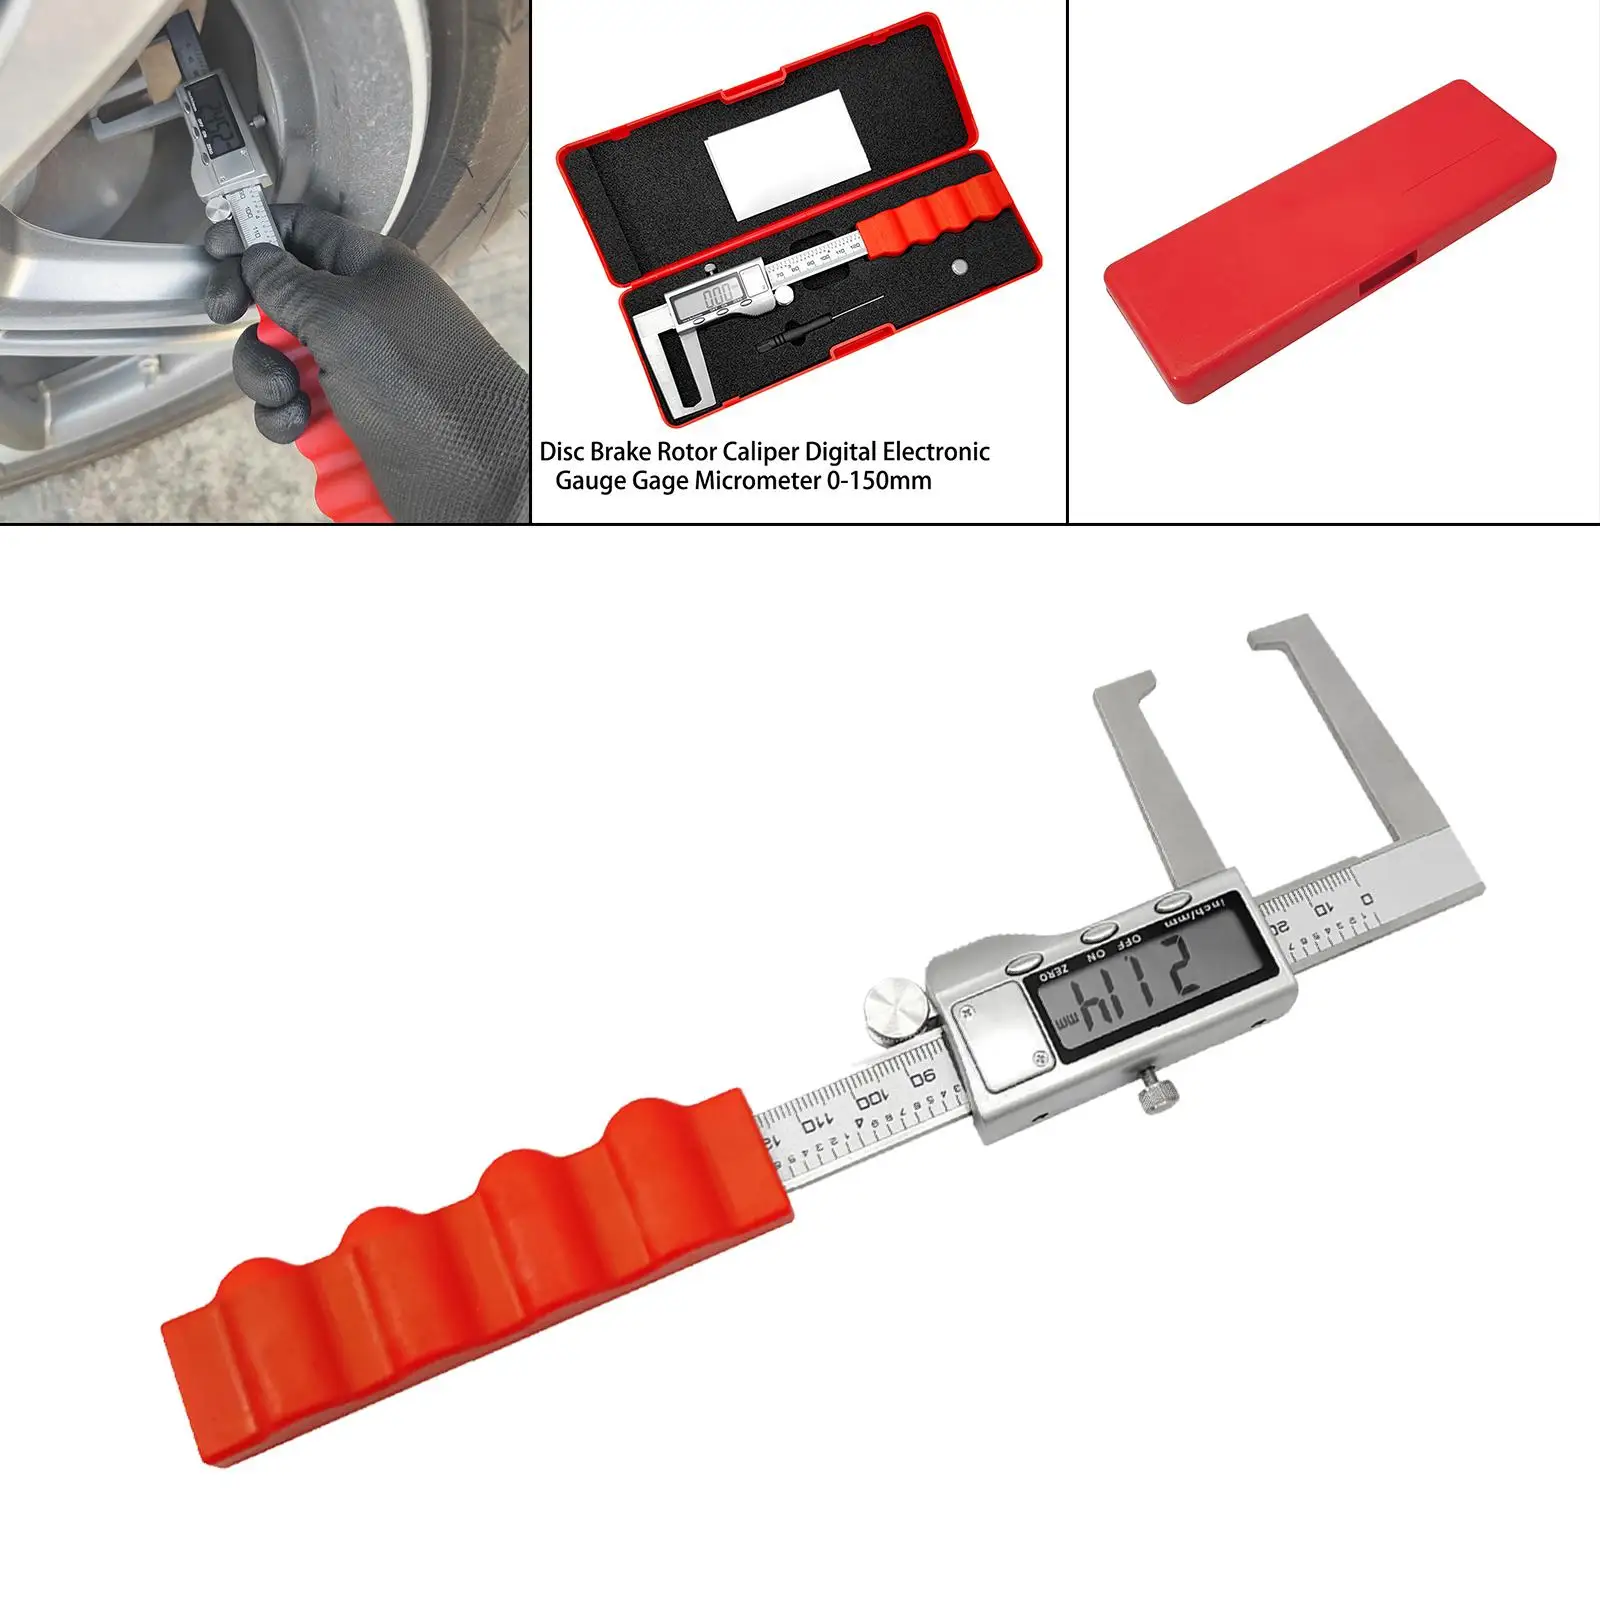 Brake Discs Calipers Digital Meter Measuring Tool Micrometer